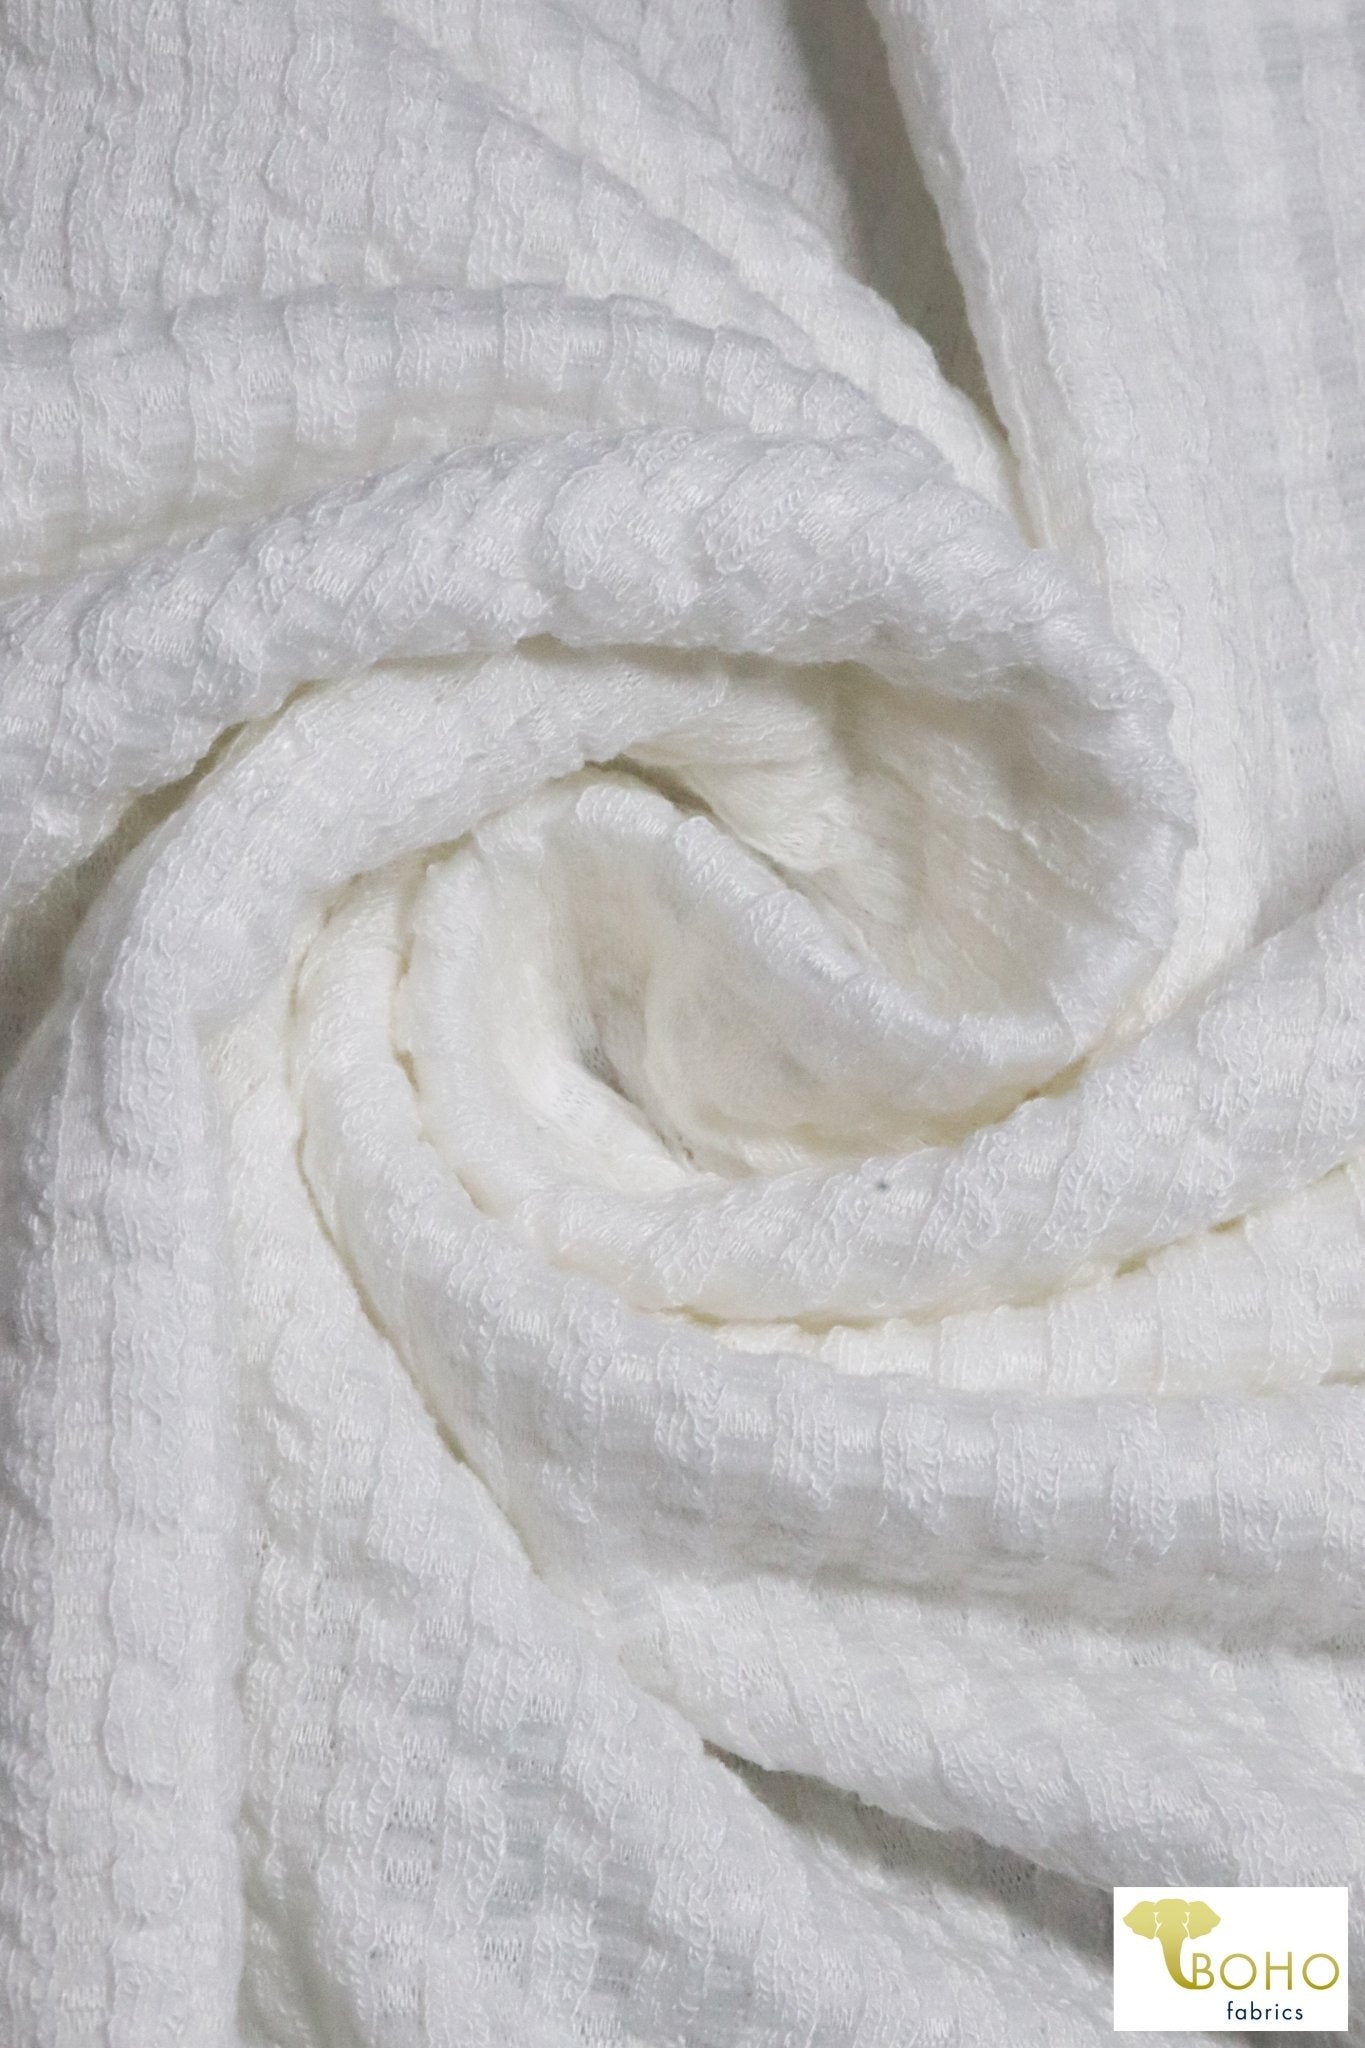 Last Cuts! White, Mini Cable Stripes, 5x5 Rib Knit. RIB-130-WHT - Boho Fabrics